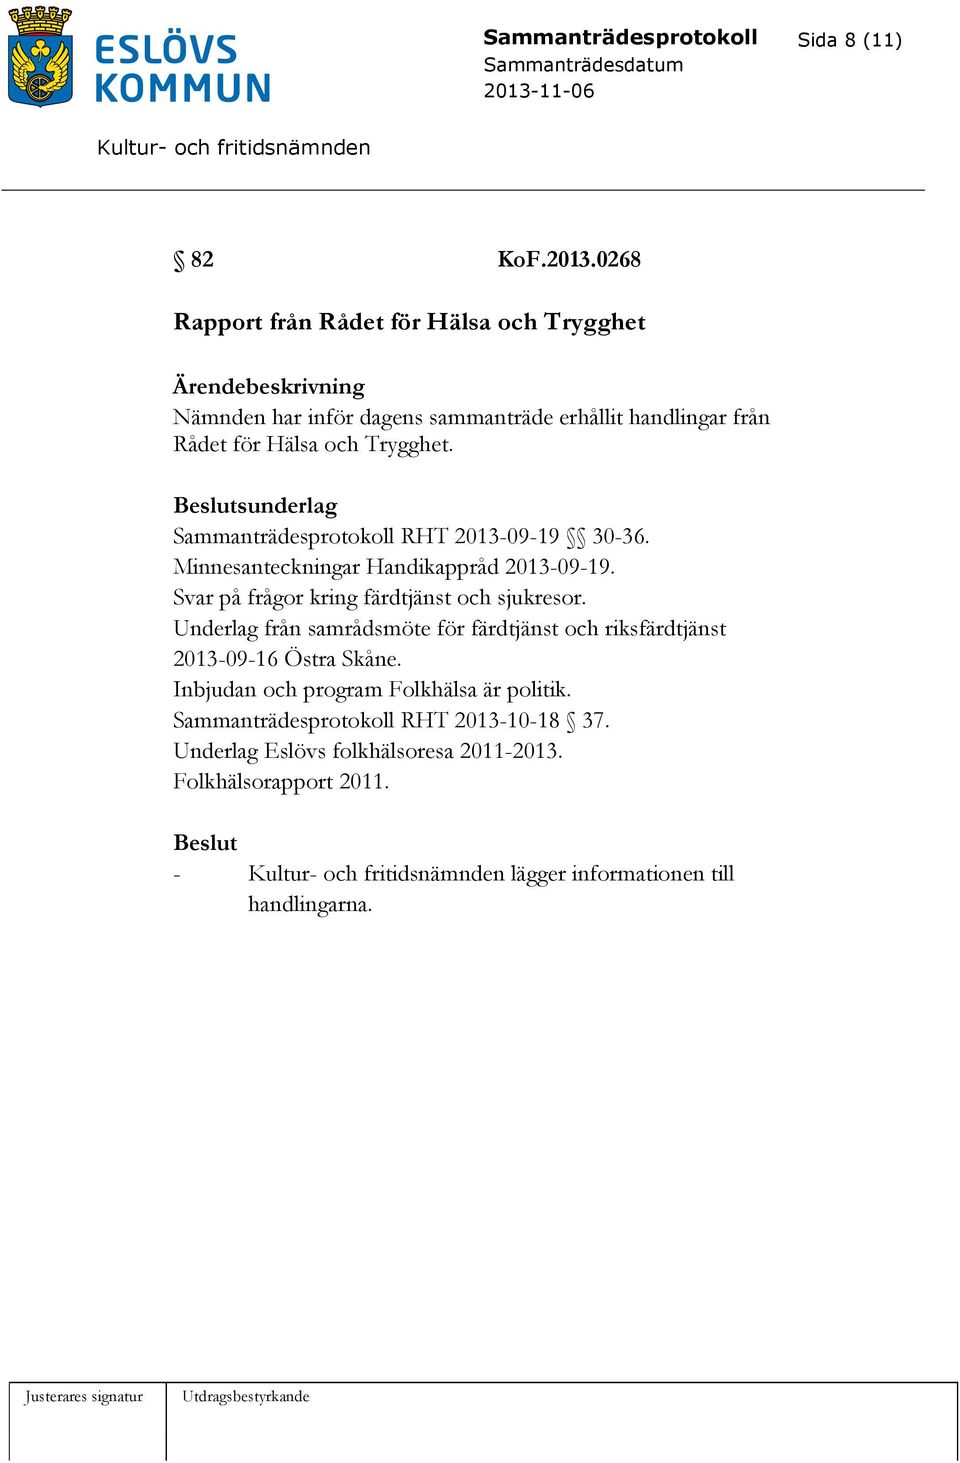 sunderlag Sammanträdesprotokoll RHT 2013-09-19 30-36. Minnesanteckningar Handikappråd 2013-09-19. Svar på frågor kring färdtjänst och sjukresor.